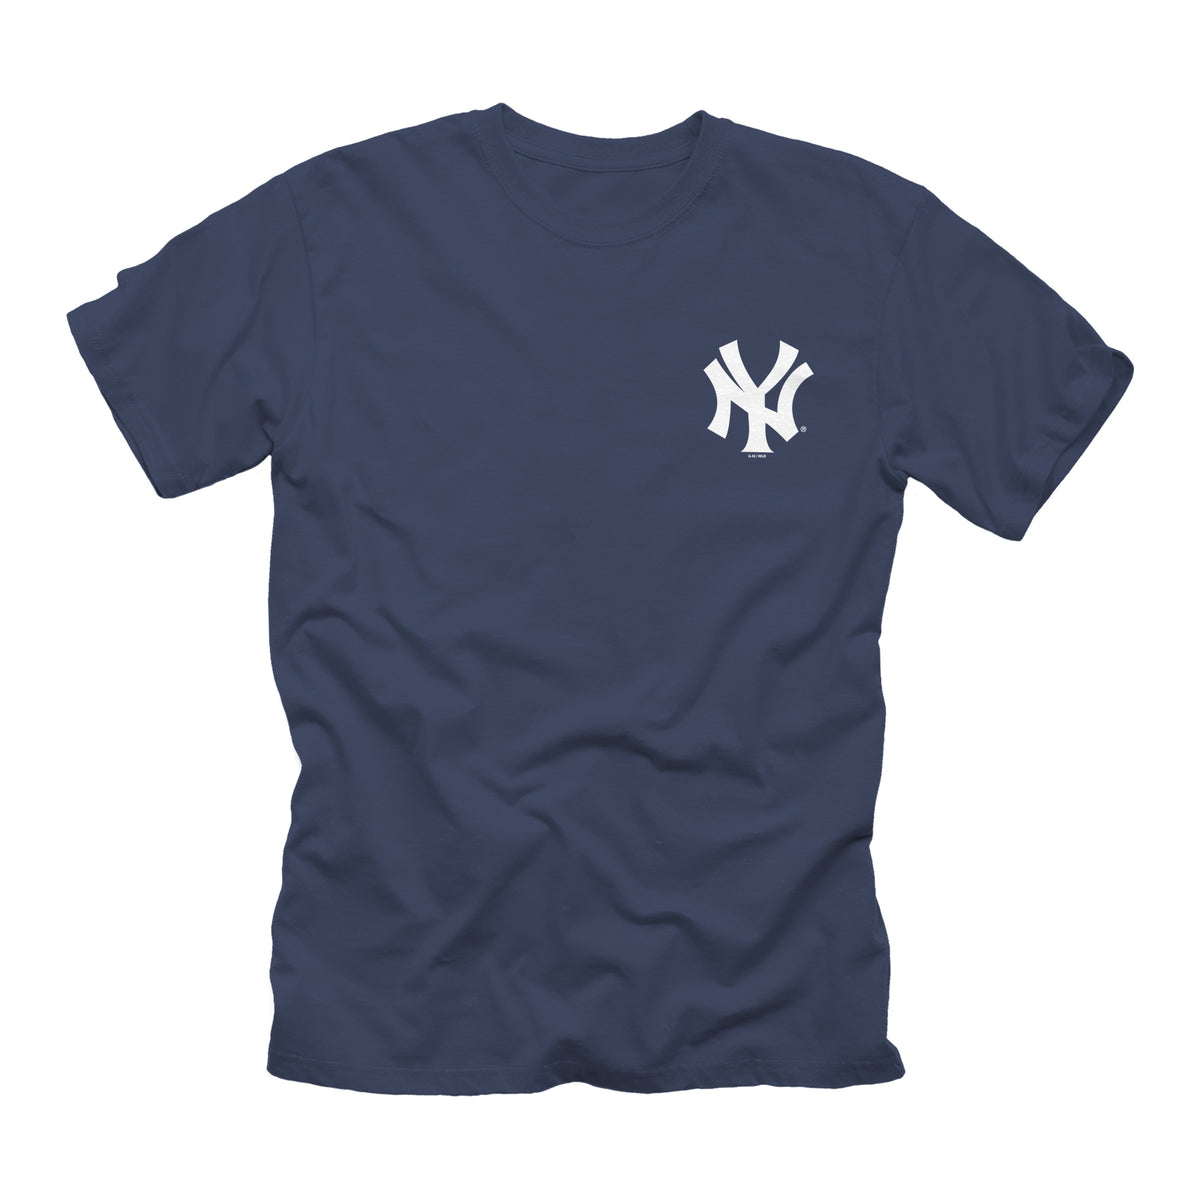  Men's Yankees Shirt